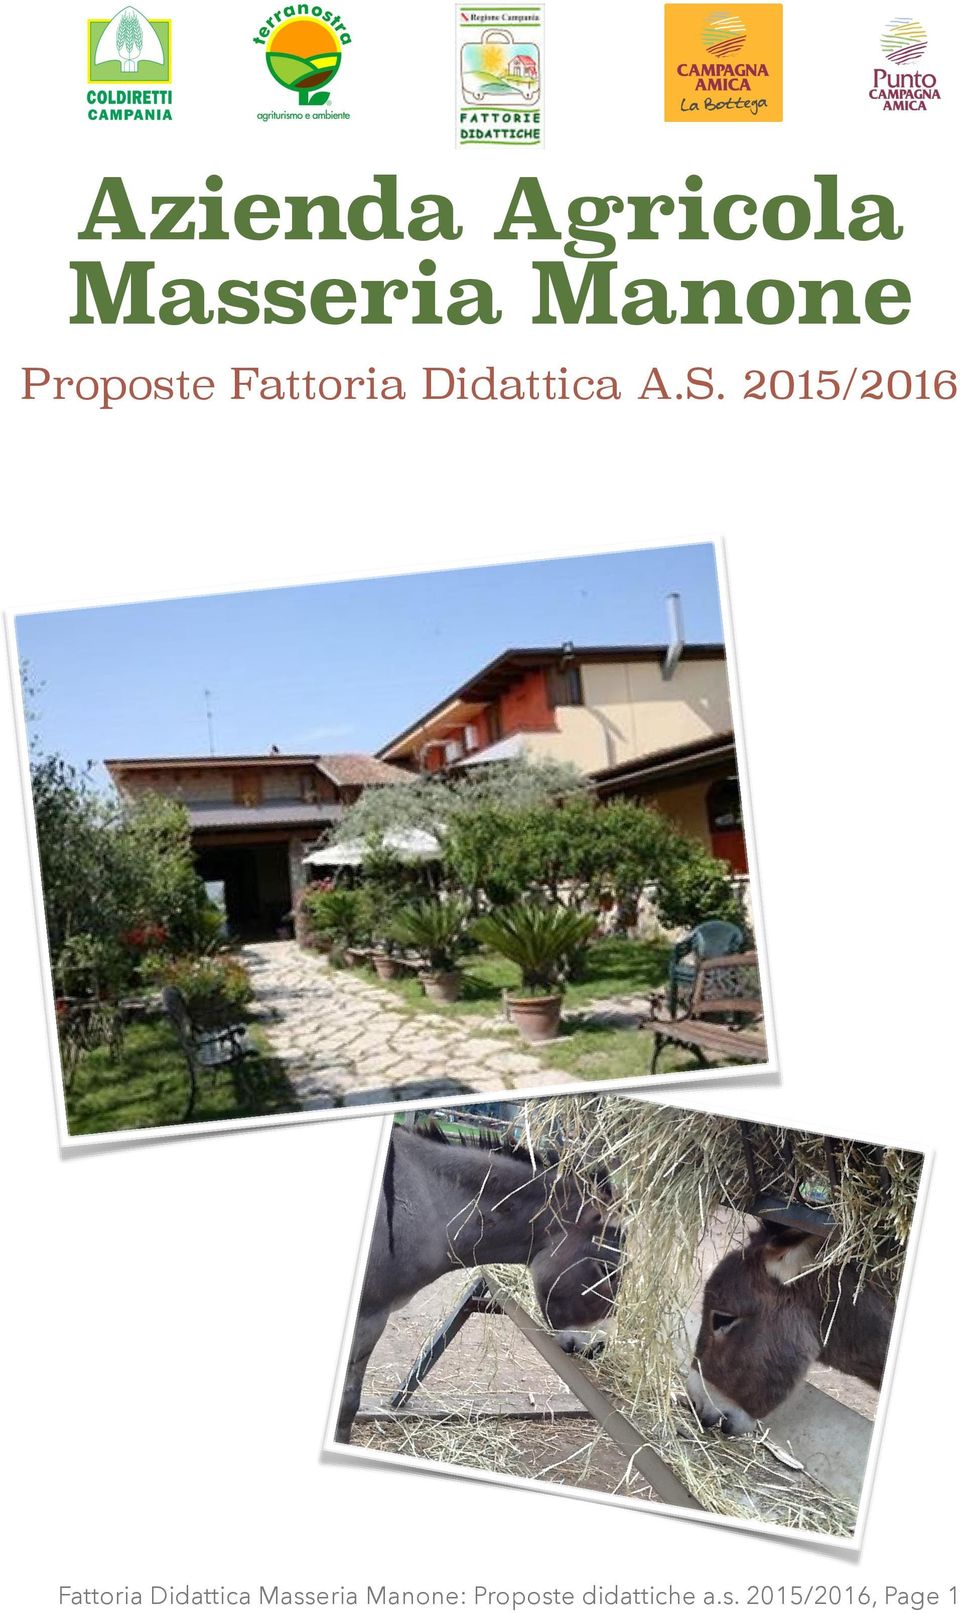 2015/2016 Fattoria Didattica Masseria